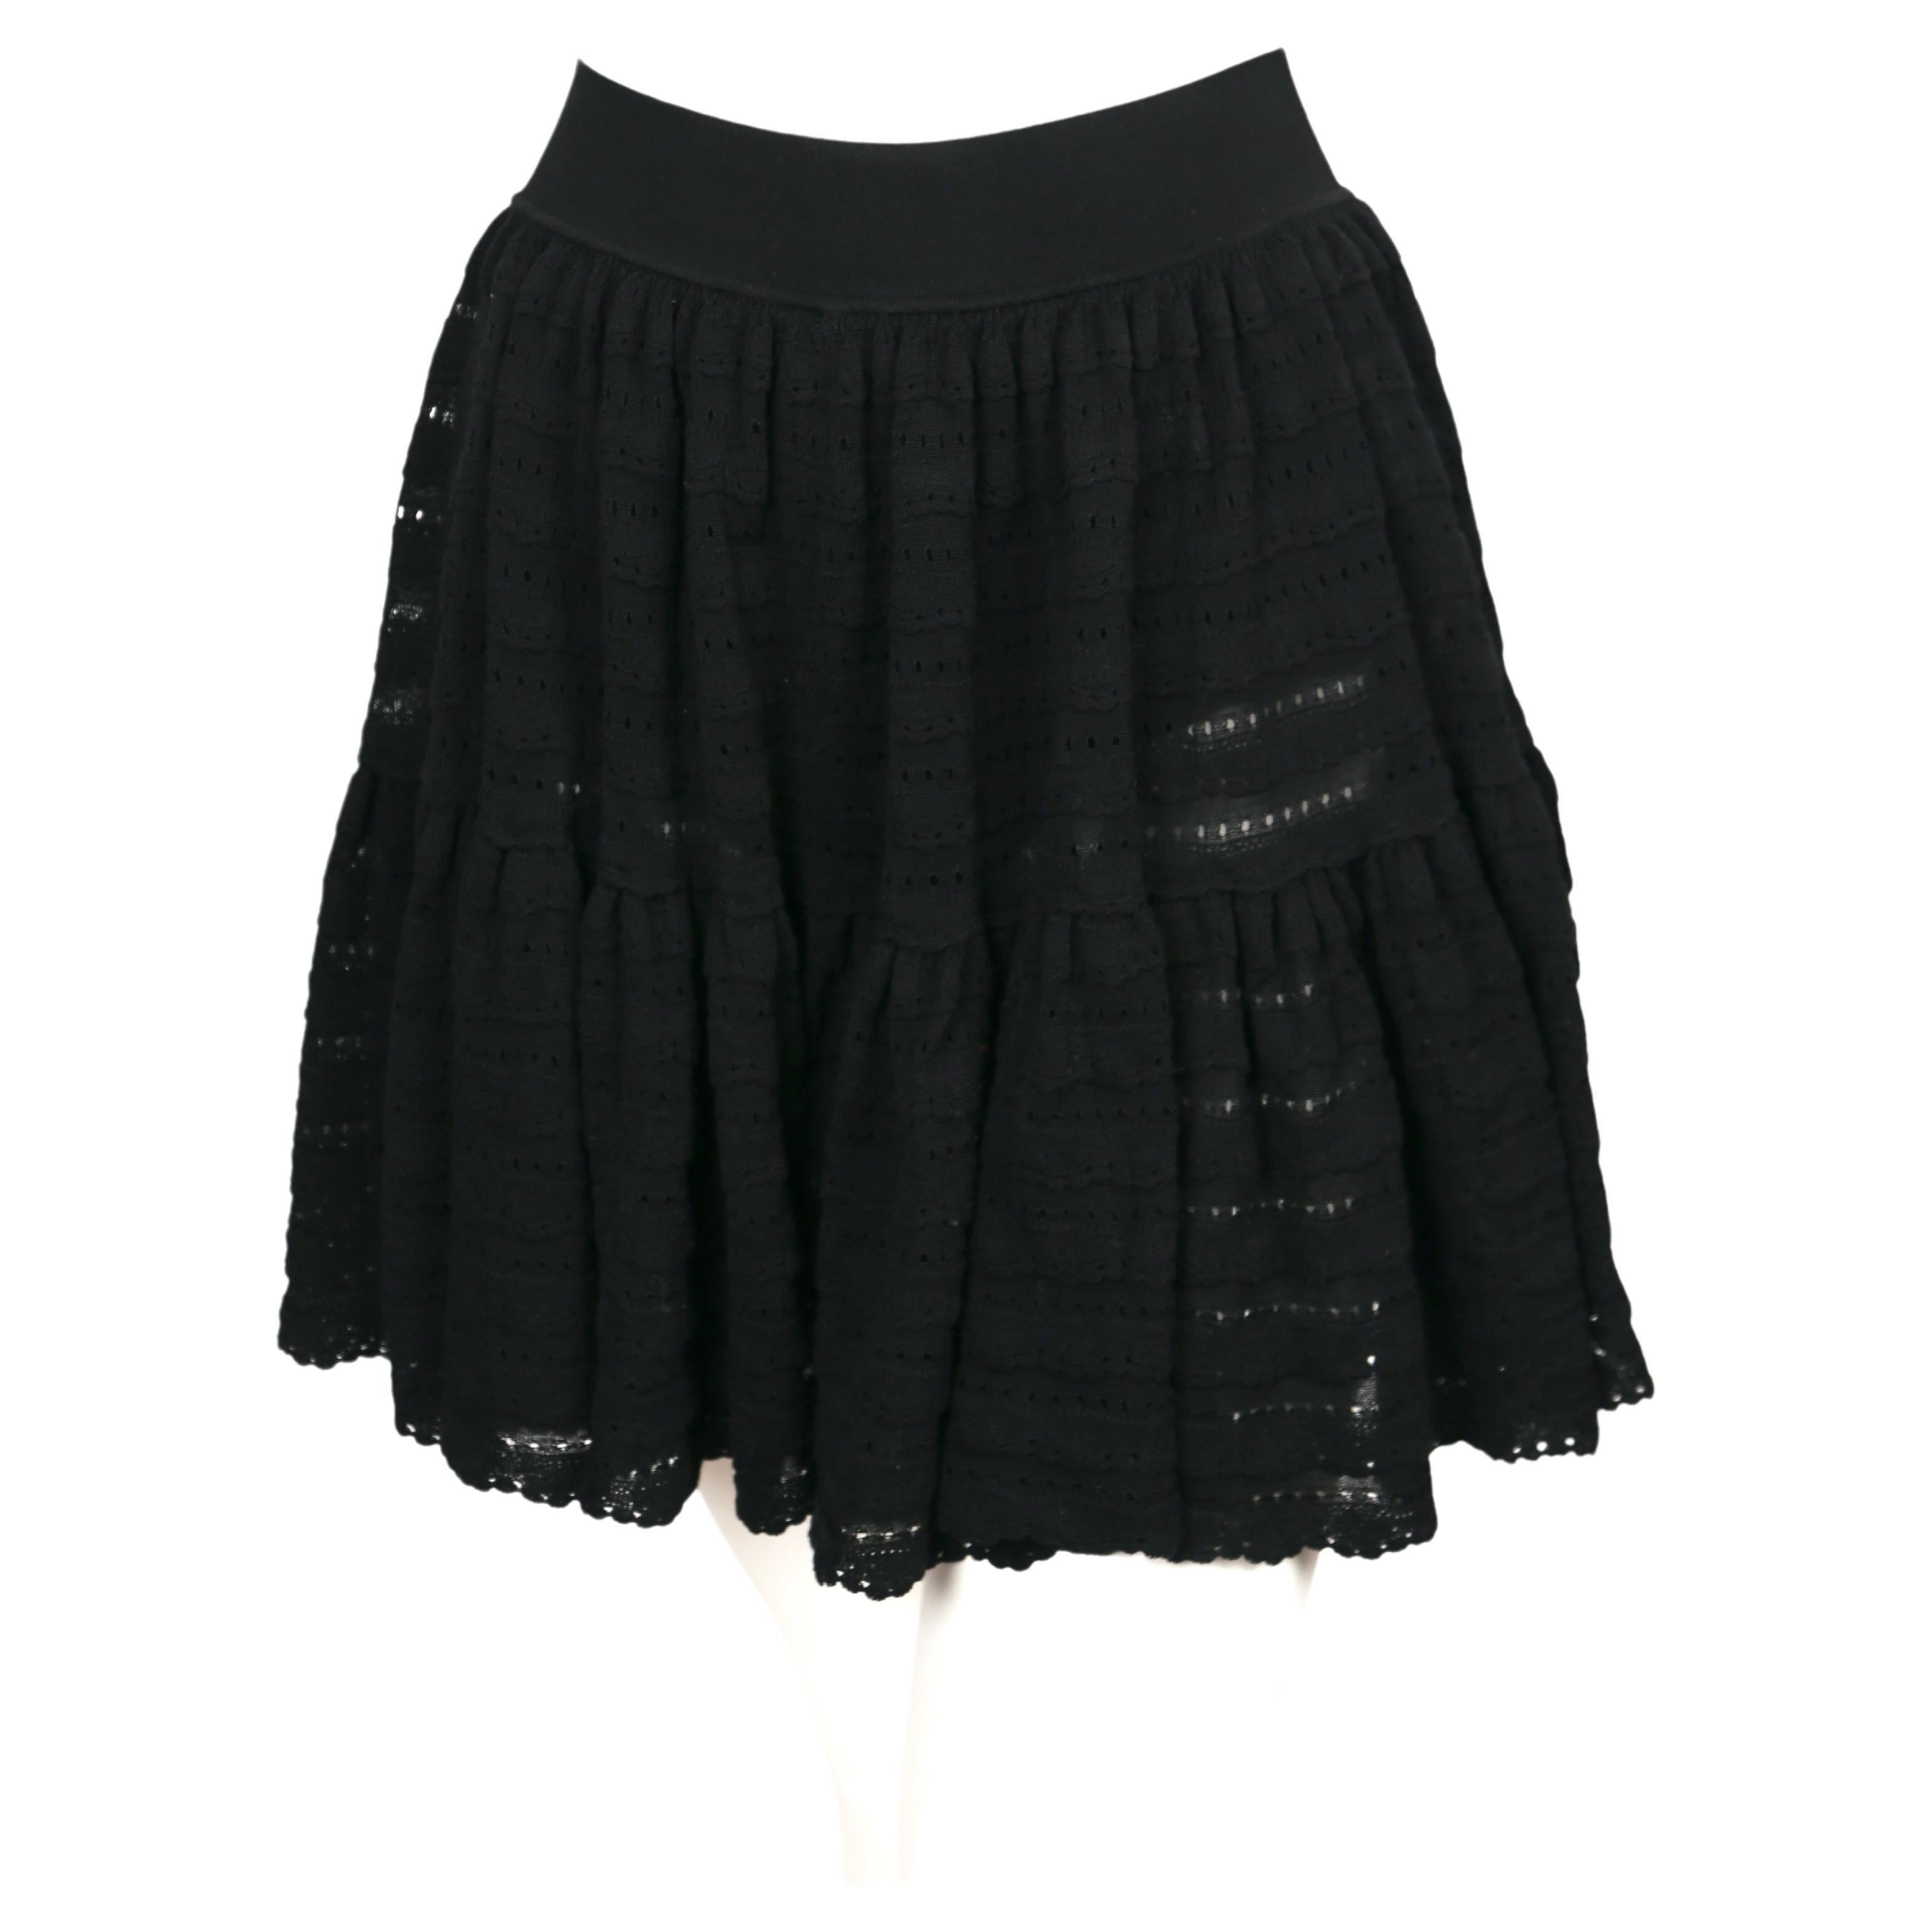 Schwarzer Minirock mit gerafften, durchbrochenen Pointelle-Strickbändern und versteckten Shorts von Azzedine Alaia aus den 2000er Jahren. Etikettiert mit der Größe 'XS'. Ungefähre Maße: Taille 23